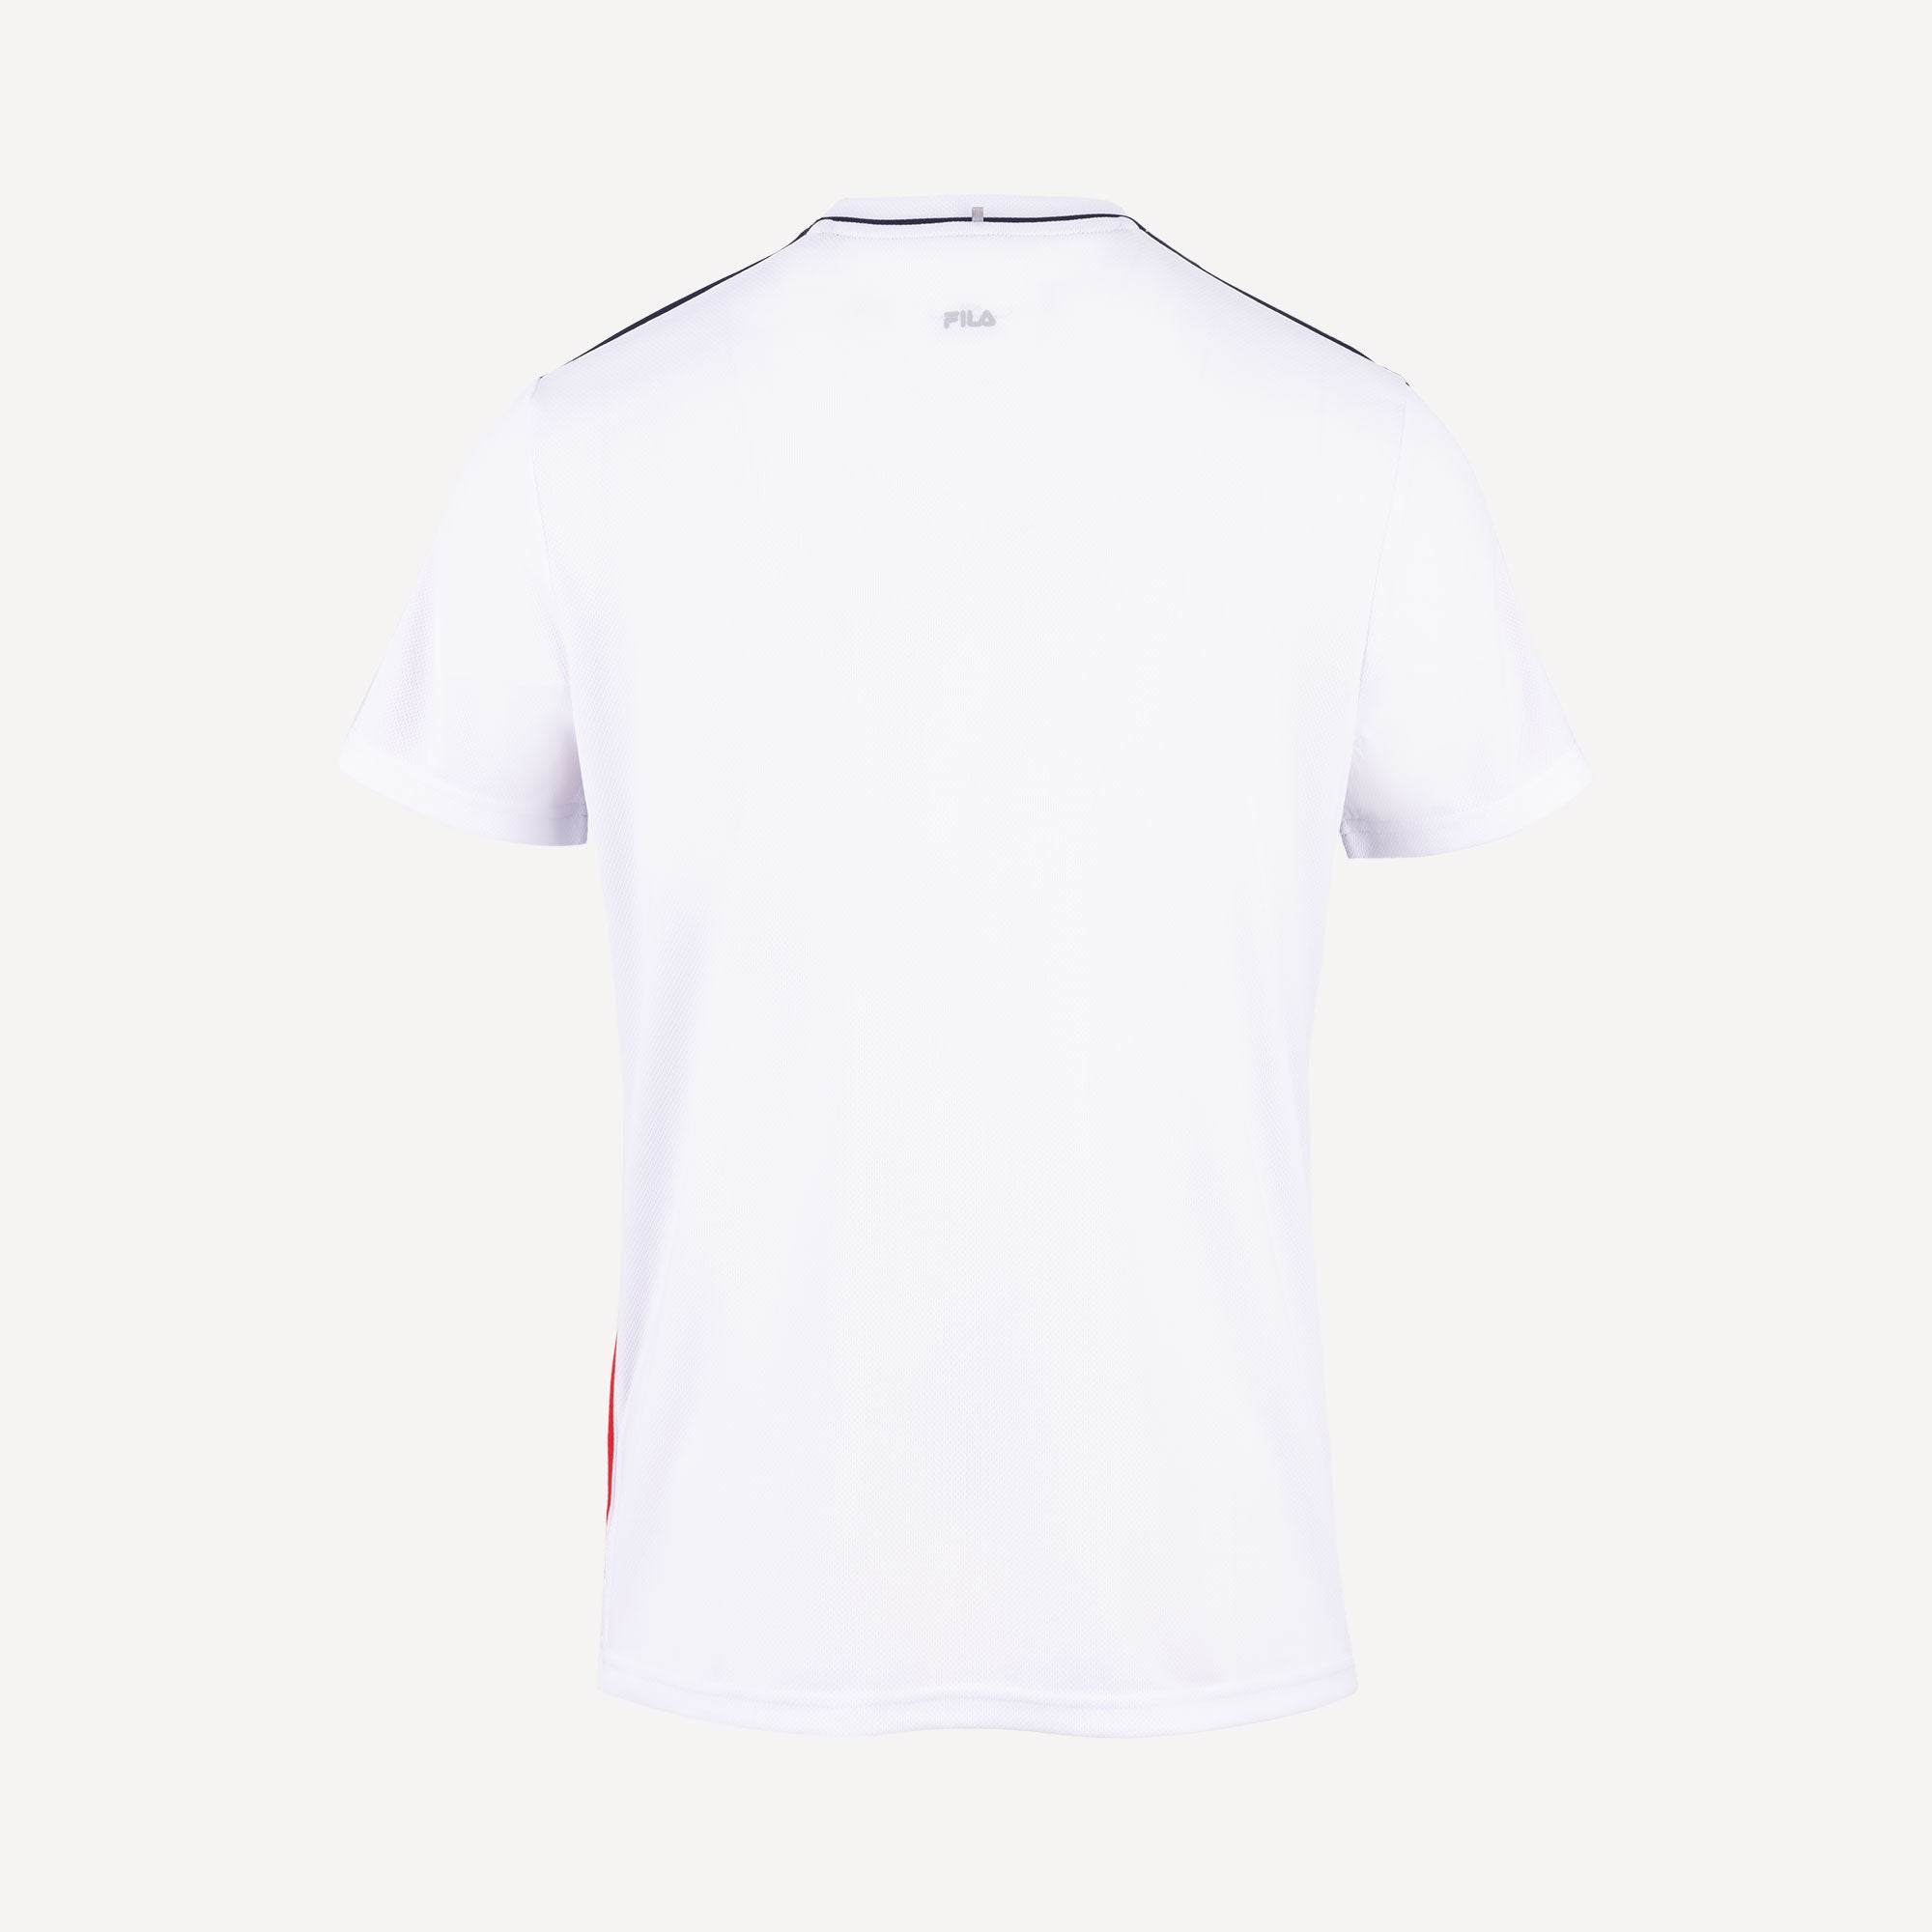 Fila Gabriel Men's Tennis Shirt - White (2)